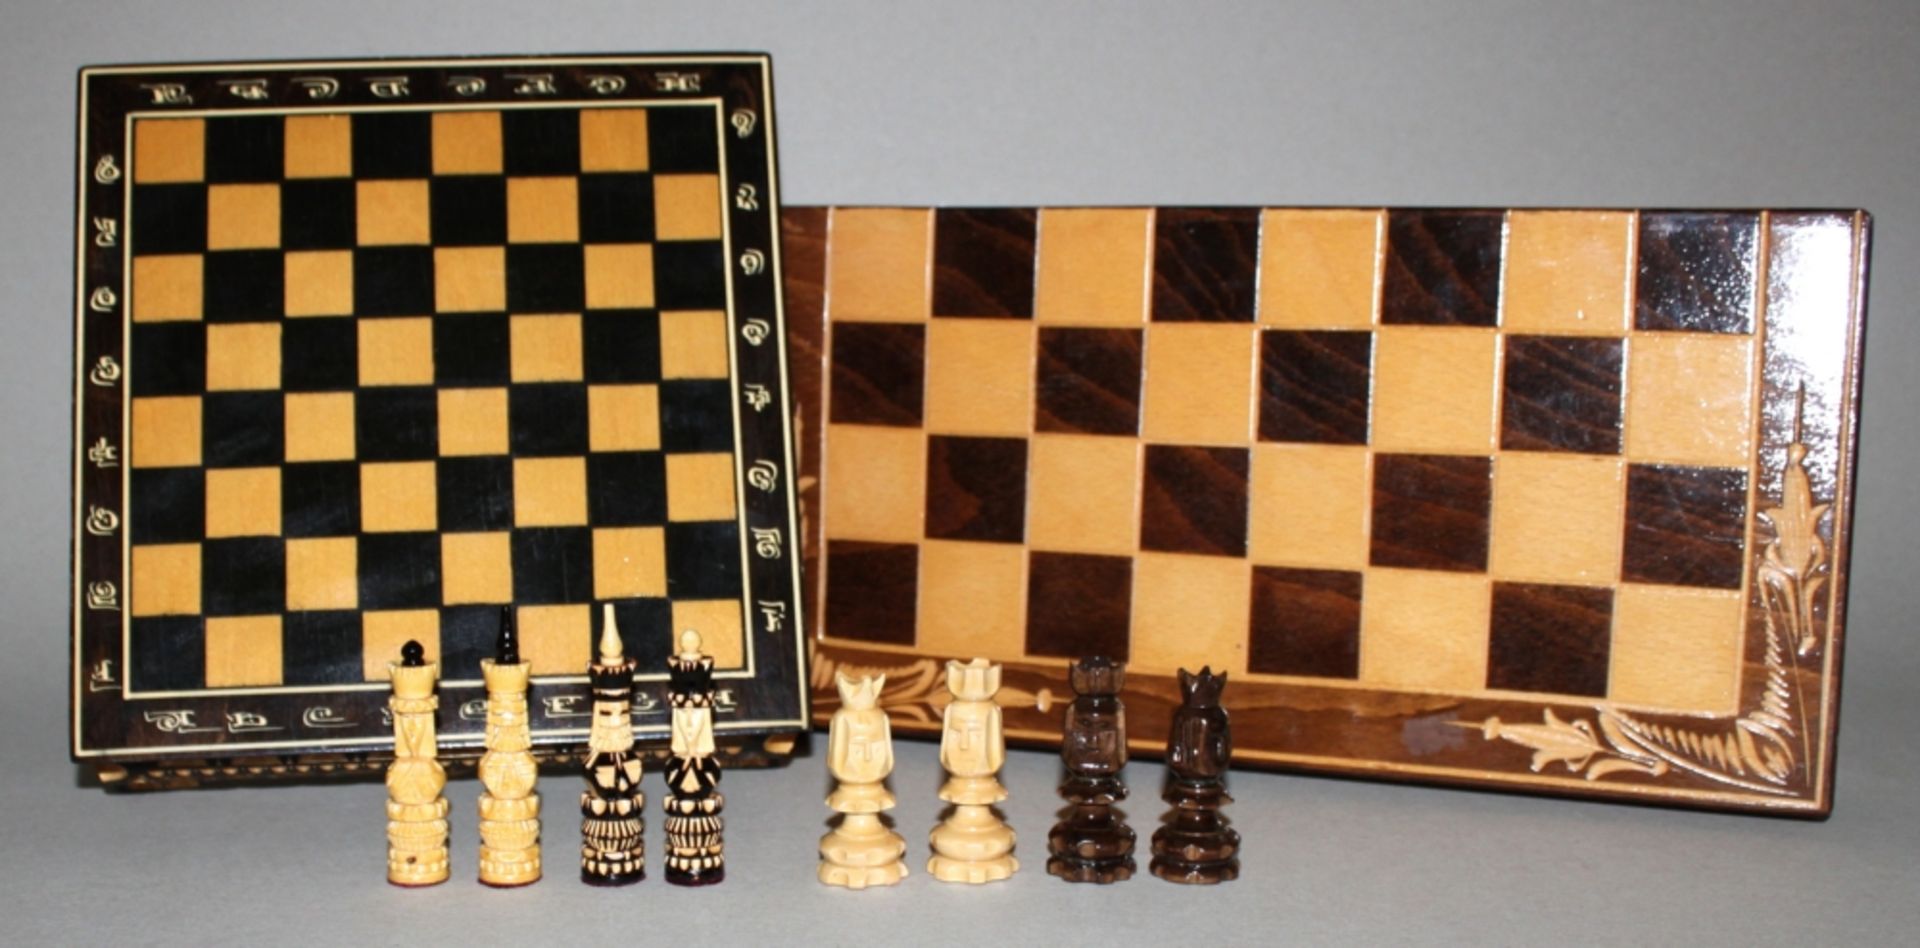 Europa. Tschechien. Zwei Schachspiel aus Holz in einer faltbaren Spielbox aus Holz. Die eine